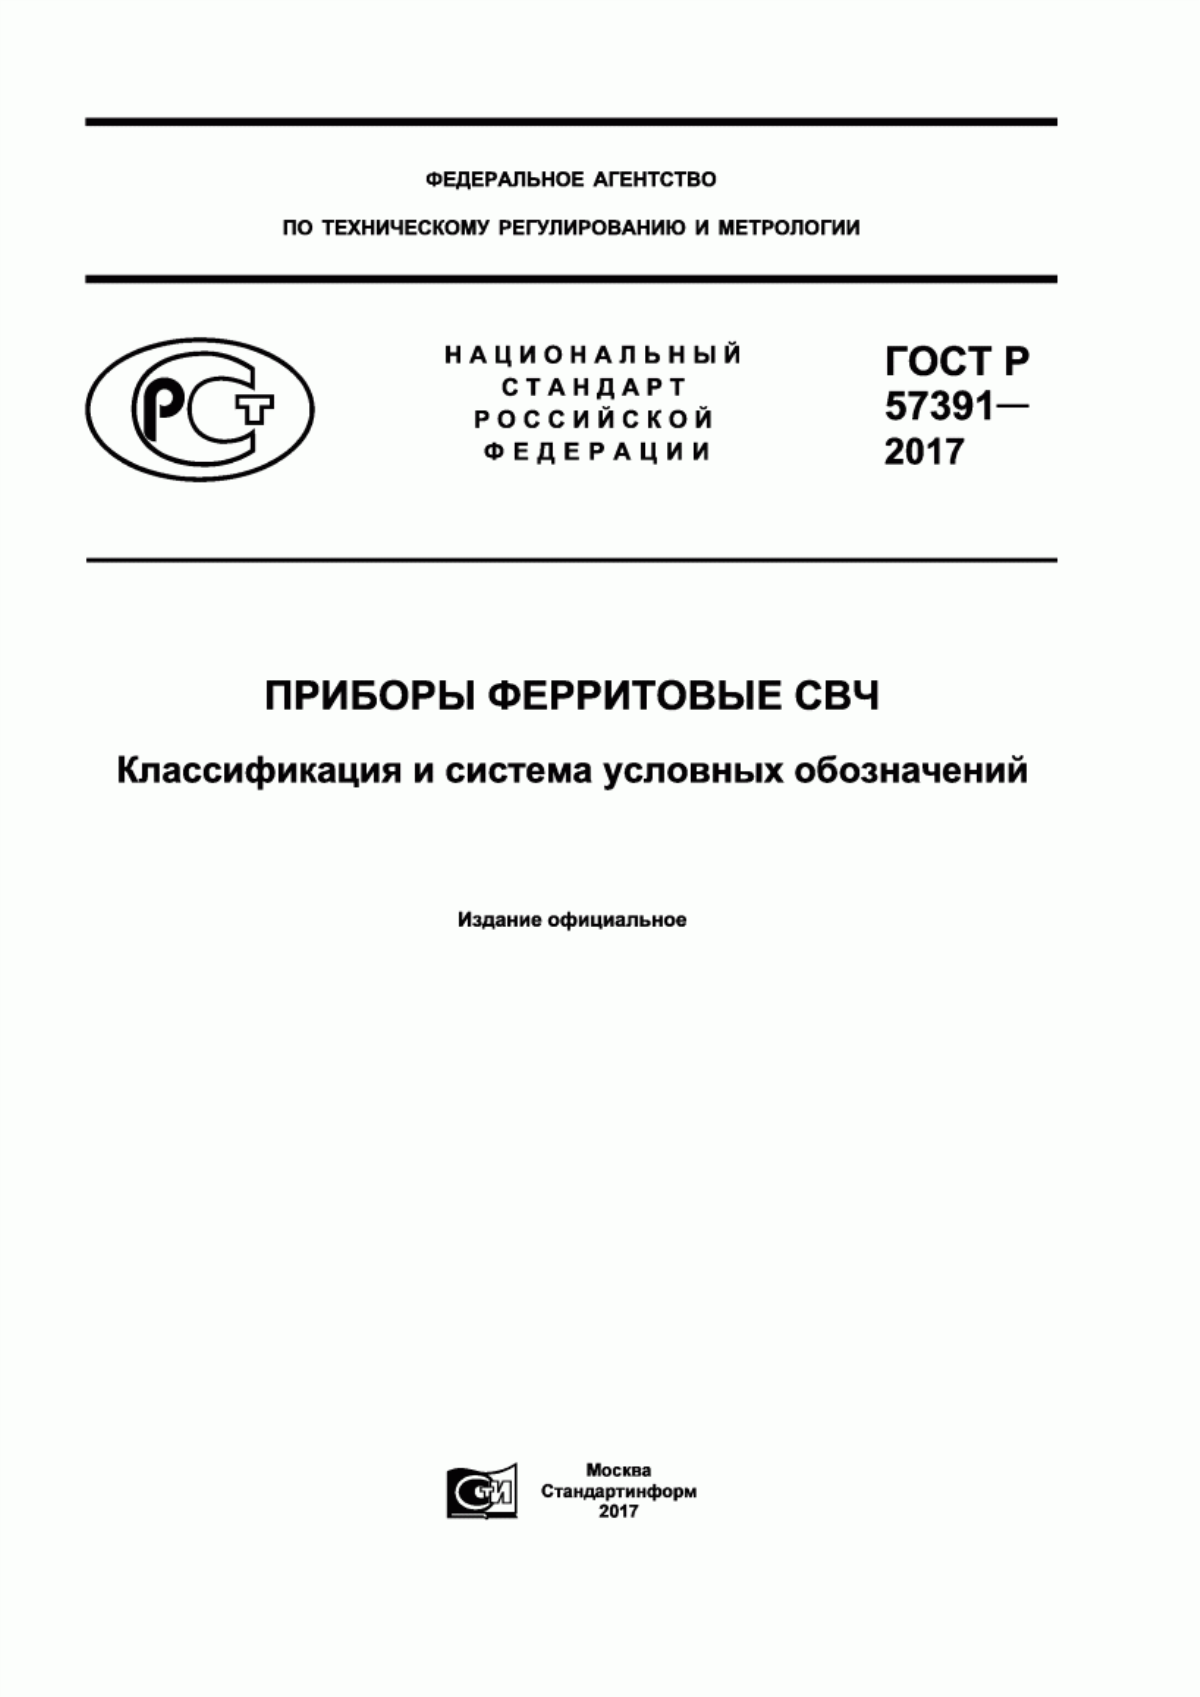 ГОСТ Р 57391-2017 Приборы ферритовые СВЧ. Классификация и система условных обозначений